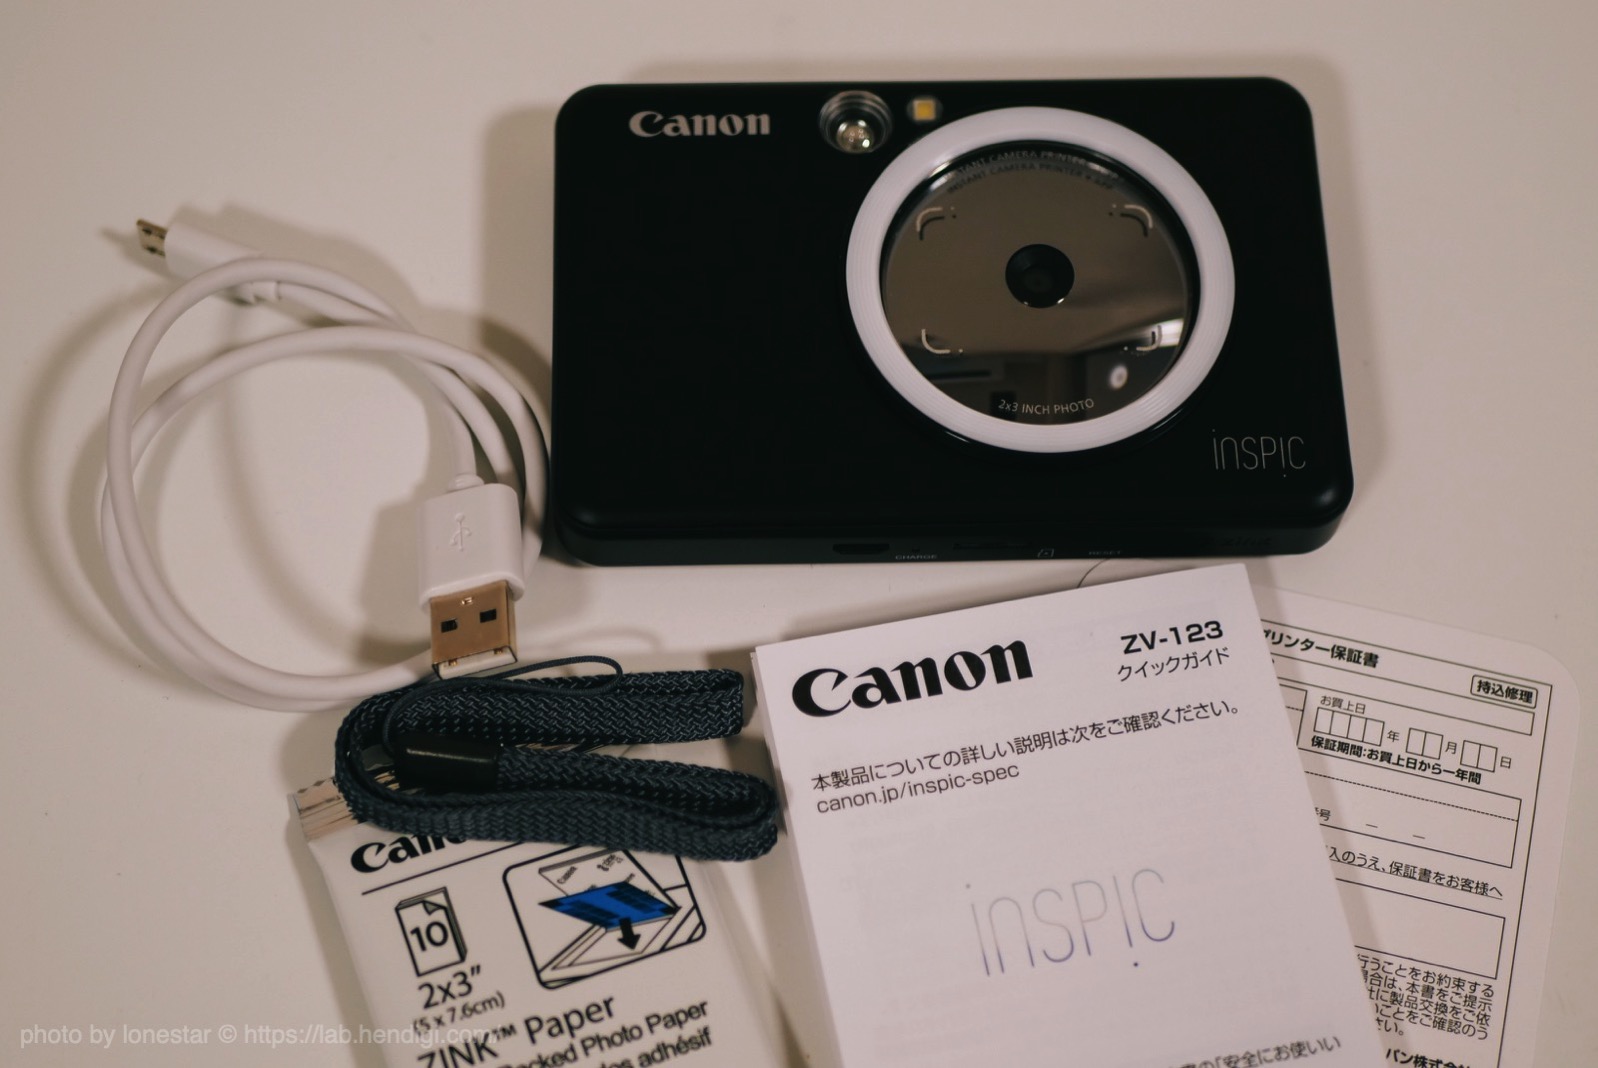 ☆送料無料☆ 当日発送可能 キャノン inspic スマホプリンター Canon ZV-123-PW